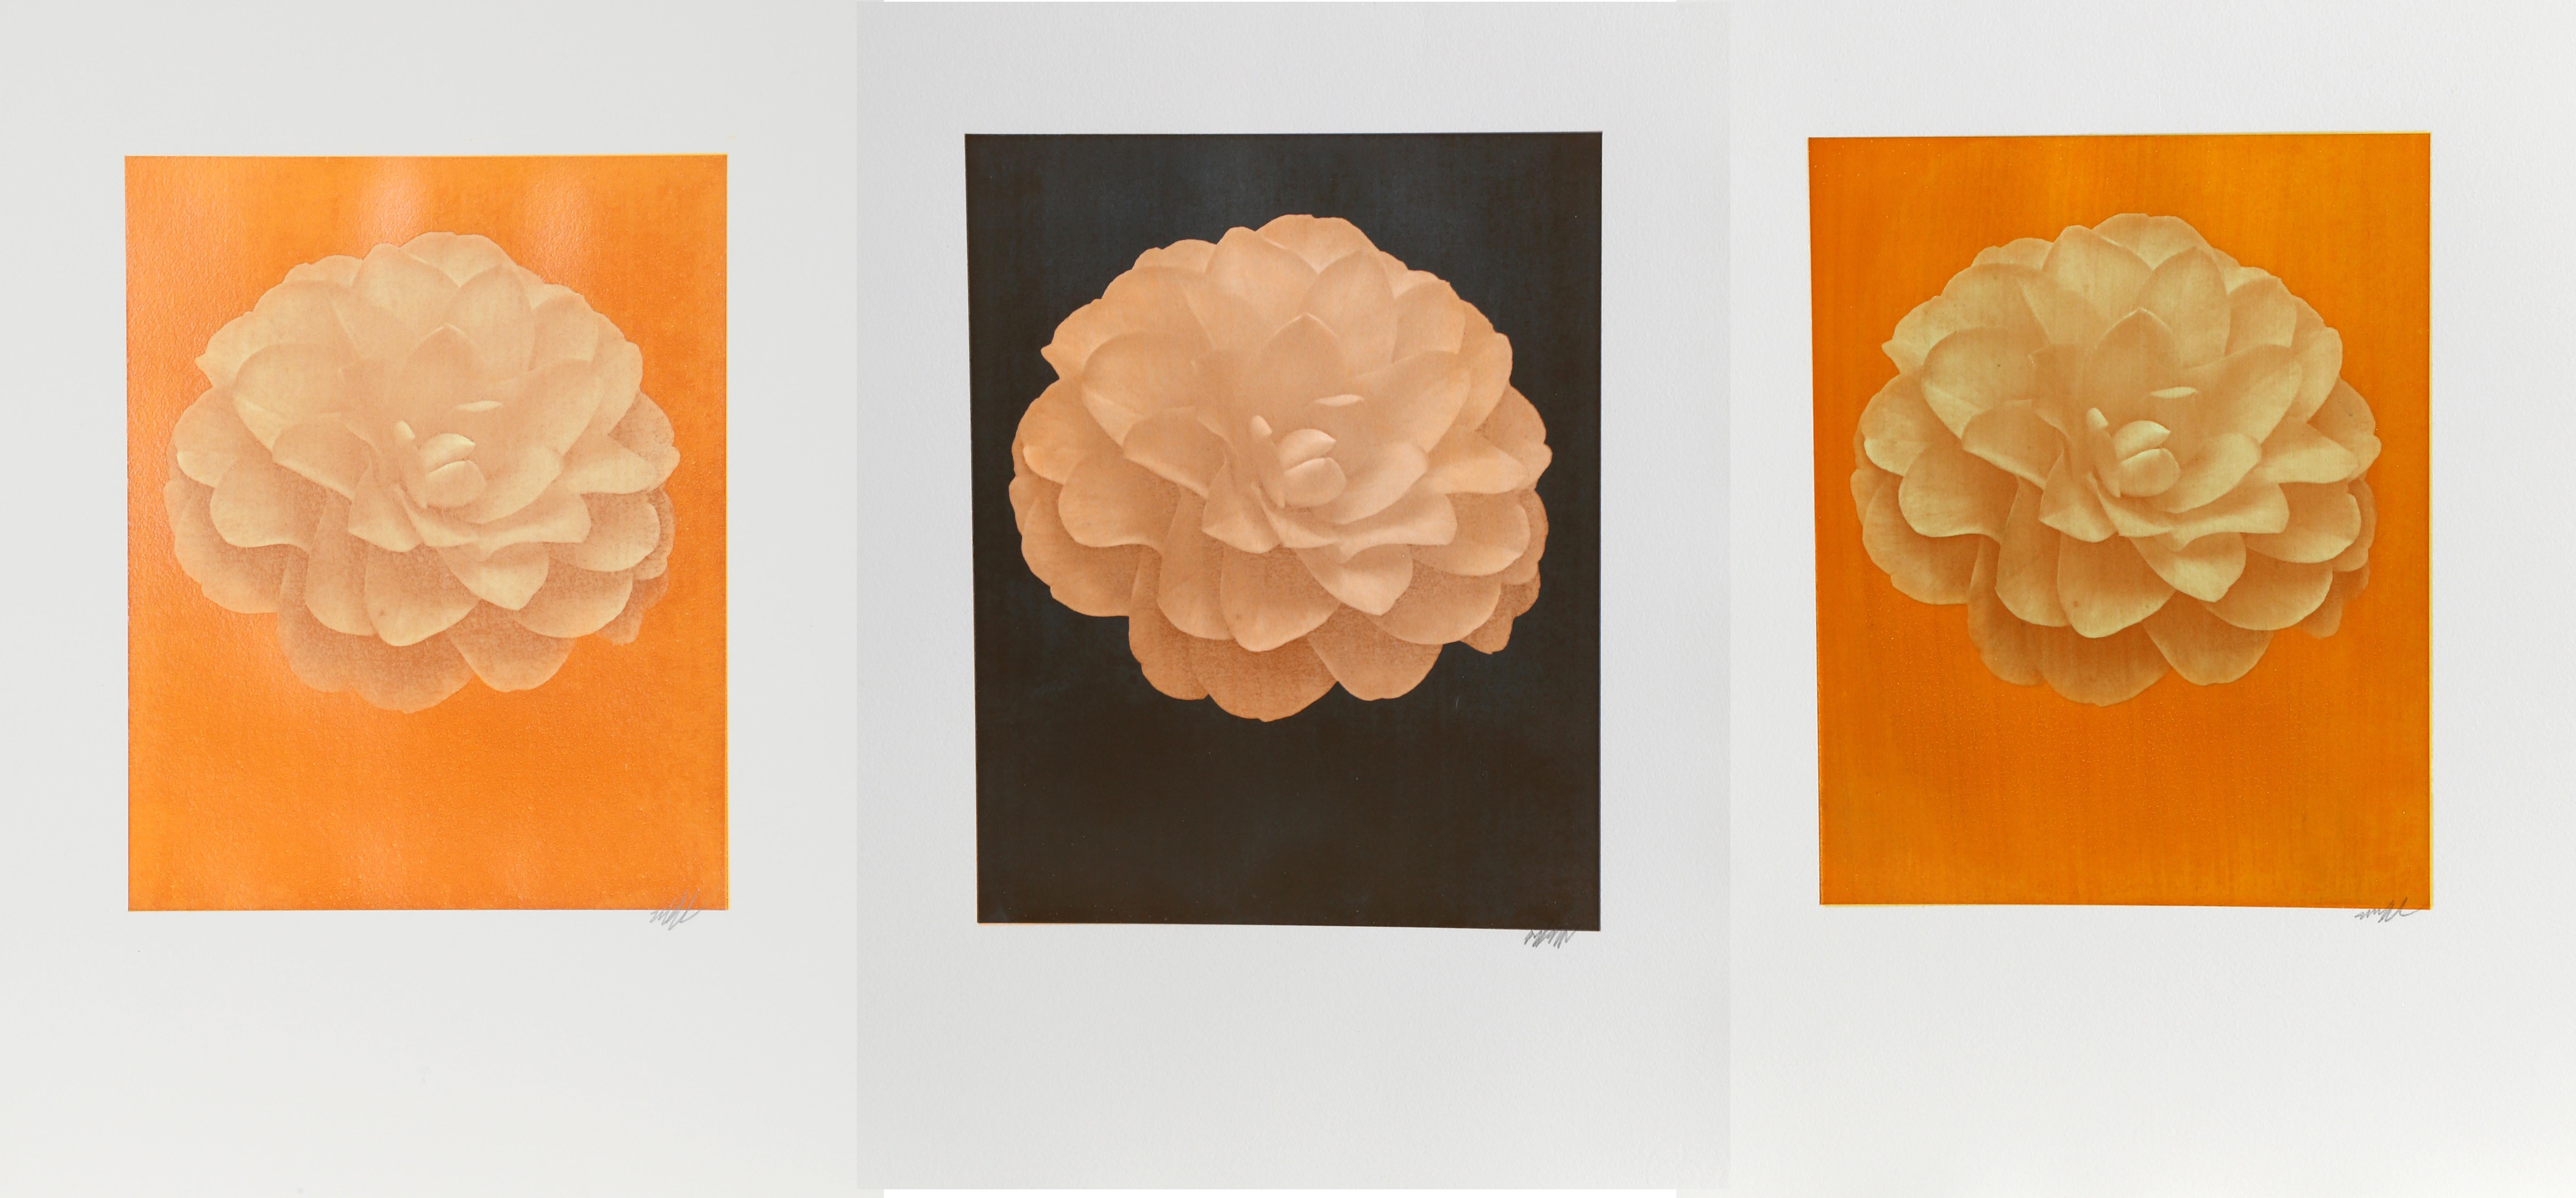 Artiste : Jonathan Singer, américain
Titre : Dahlia blanc sur orange
Année : 2014
Médium : Photographie numérique, signée au crayon
Taille de l'image : 13 x 10 pouces
Taille : 22.5 x 16 in. (57,15 x 40,64 cm)

Artiste : Jonathan Singer,